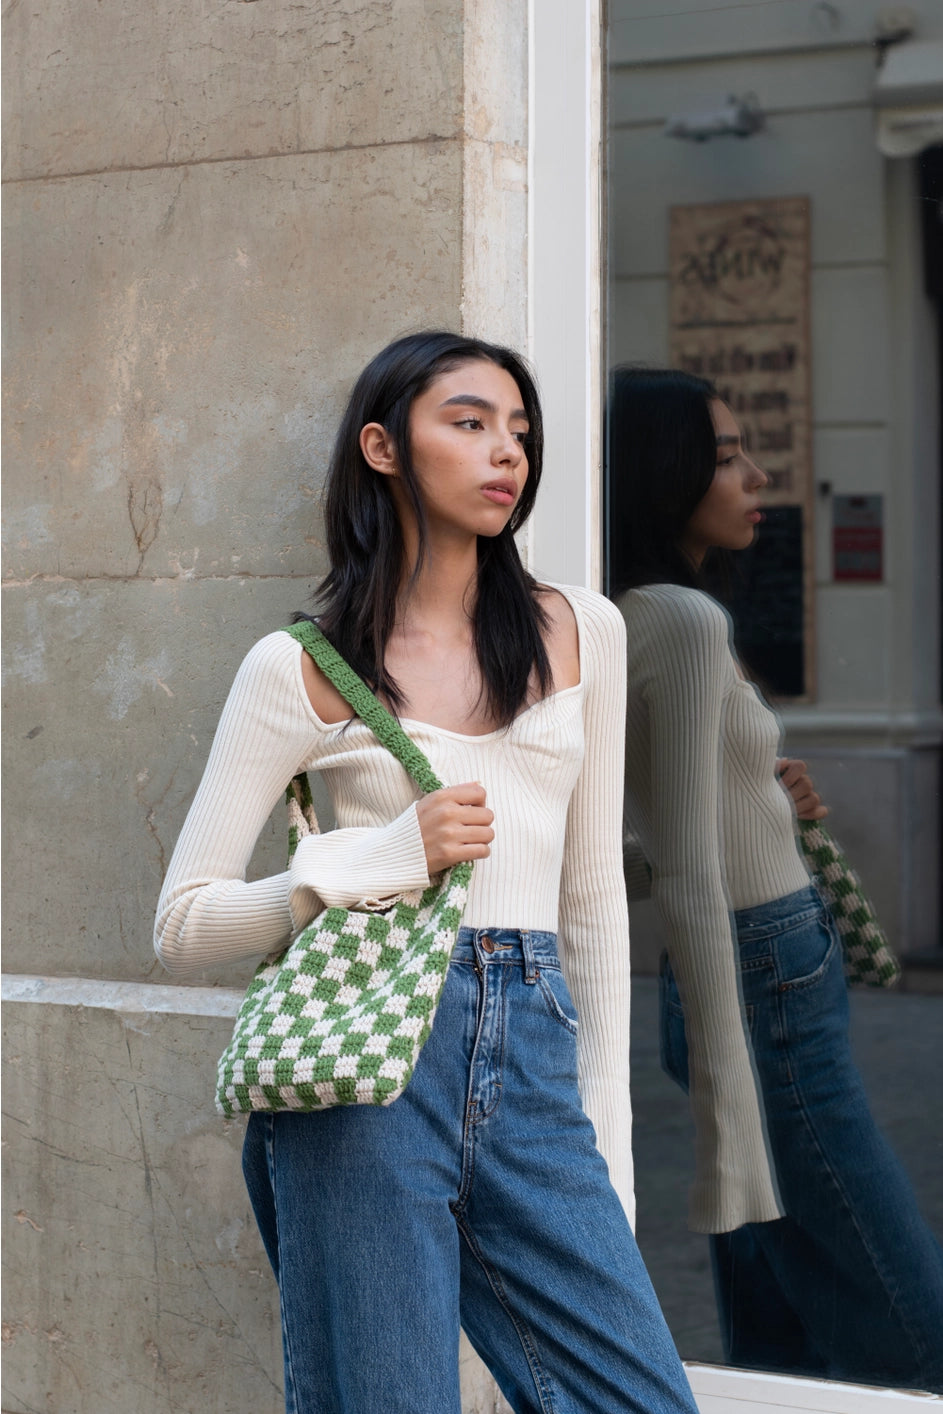 PAULETTE bag Crochet Bag GREEN